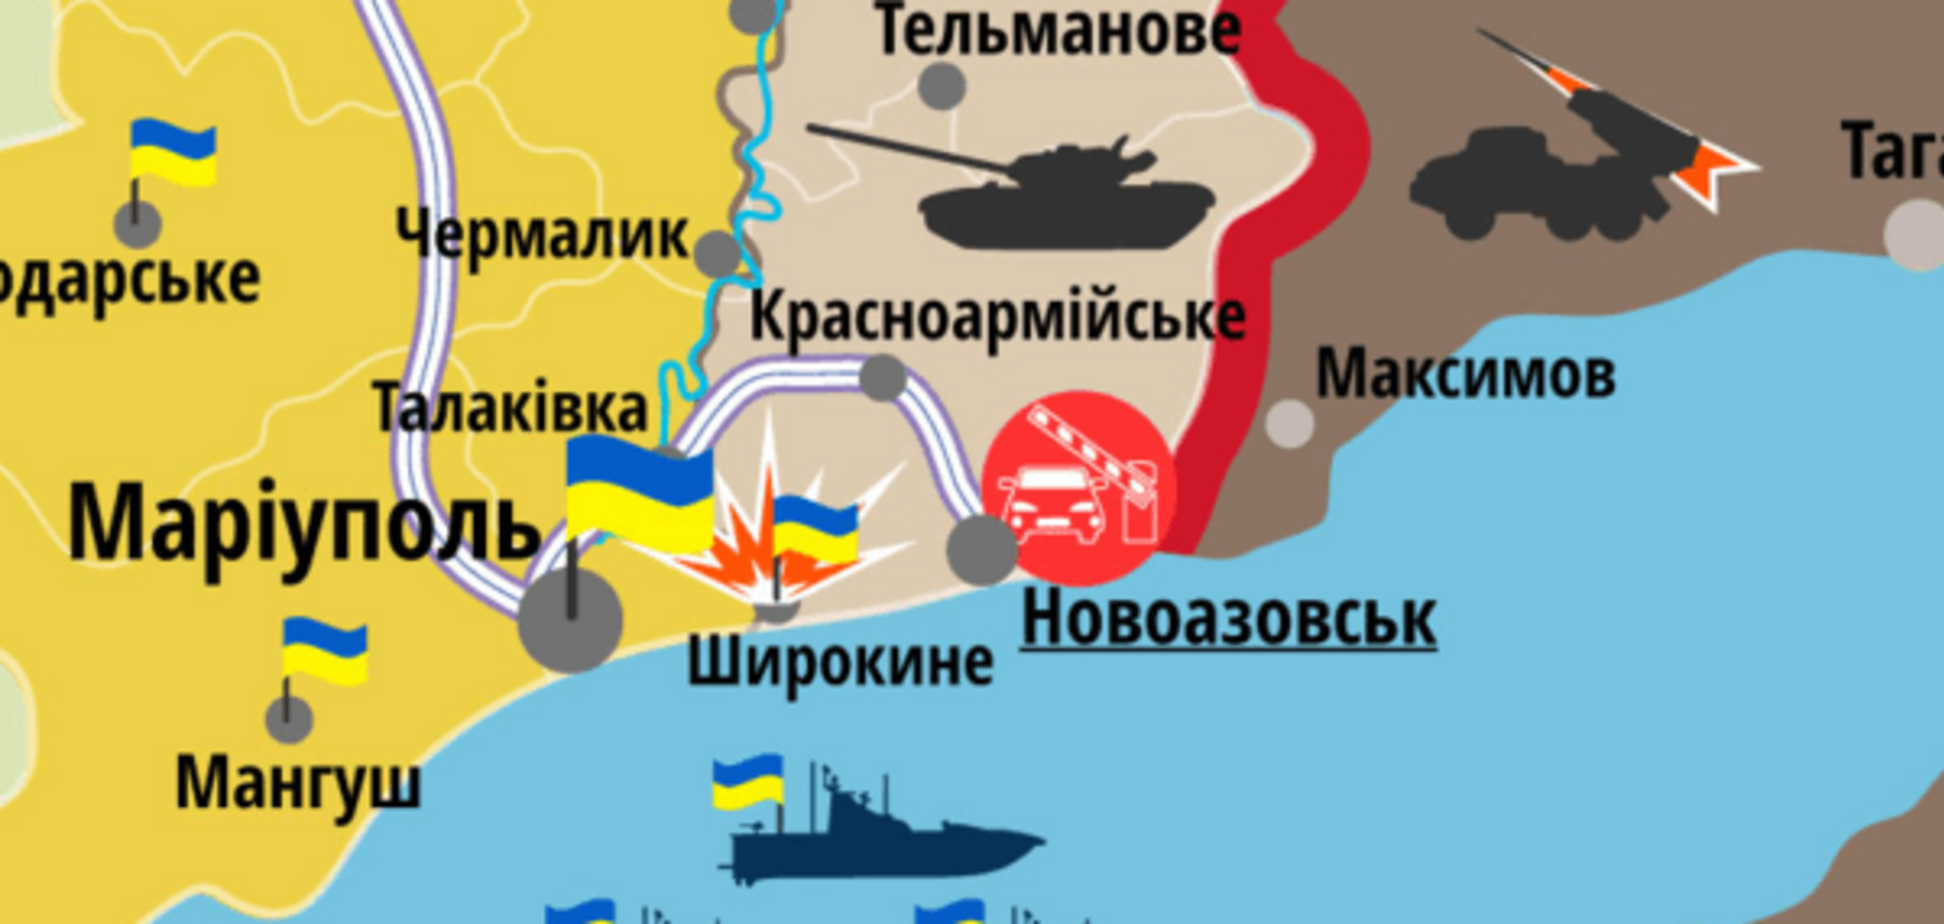 Под Мариуполем оккупанты компенсировали свою трусость 'Градами': карта АТО